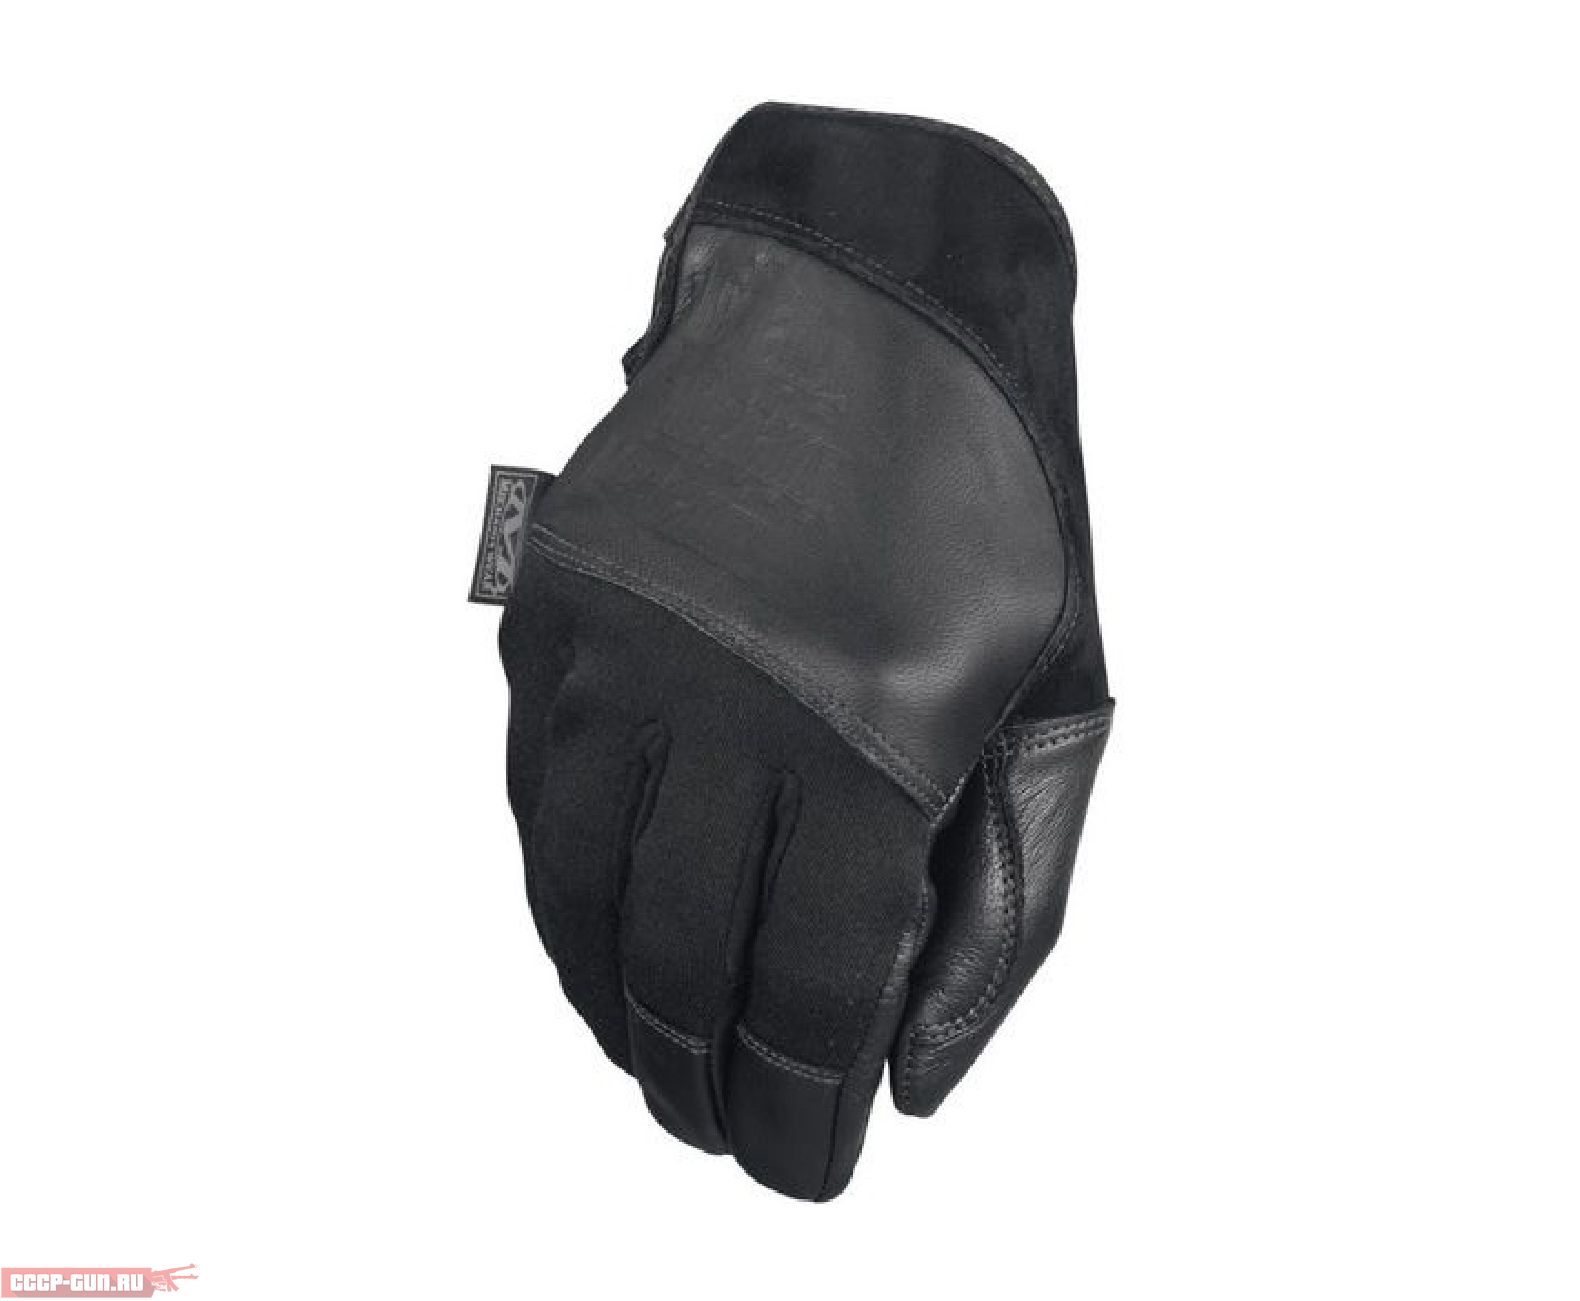 Wear gloves. Перчатки Noname Pursuit Gloves. Перчатки Mechanix без пальцев.